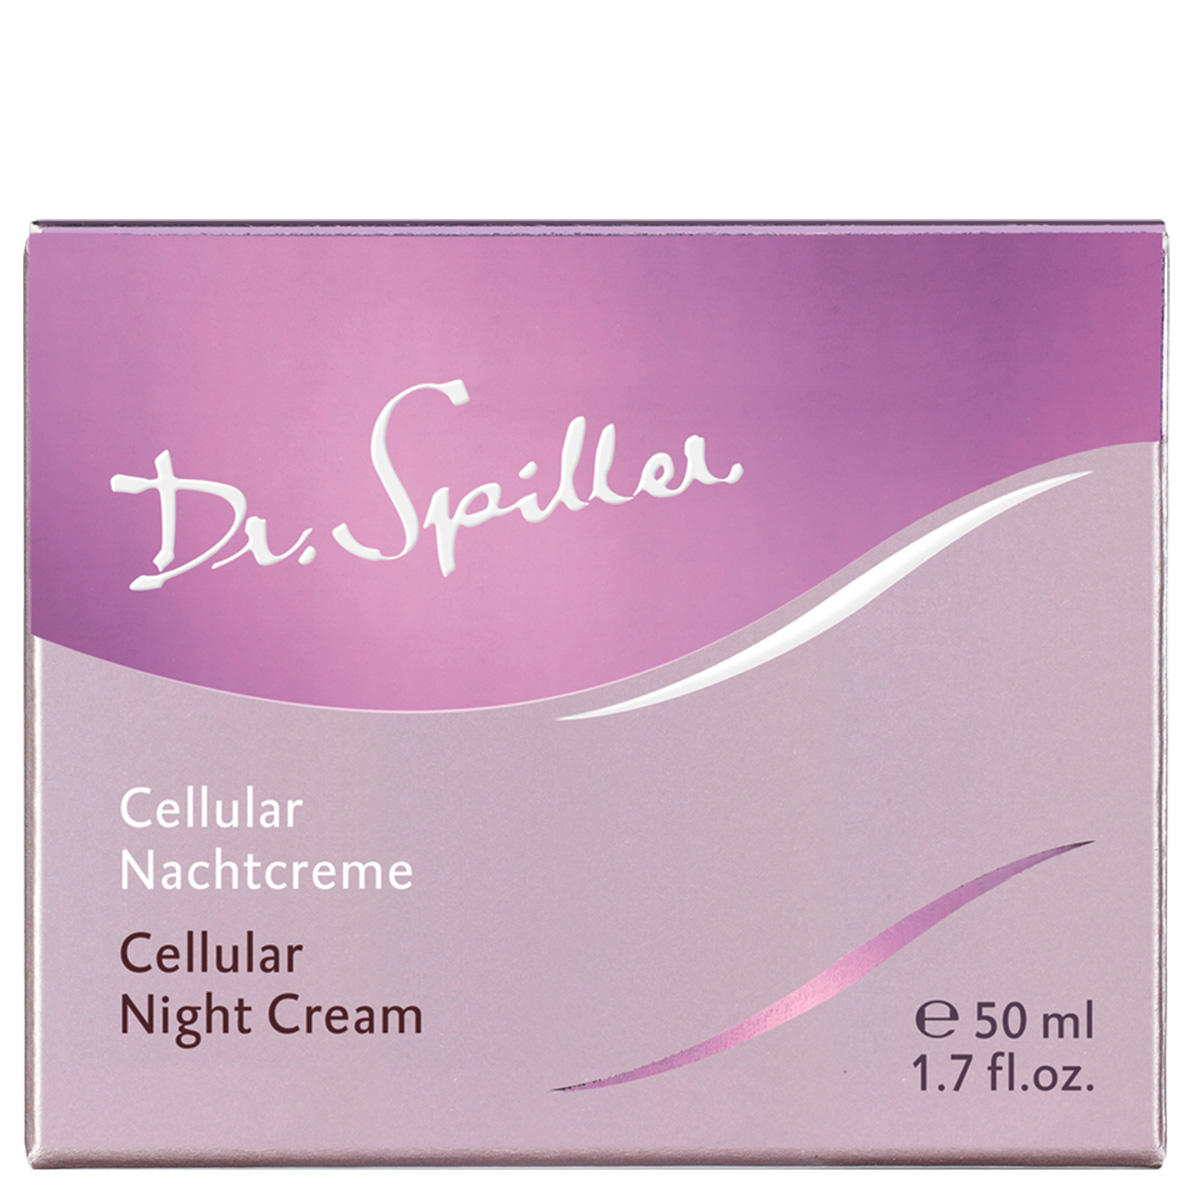 Dr. Spiller Cellulaire Nachtcrème 50 ml - 3